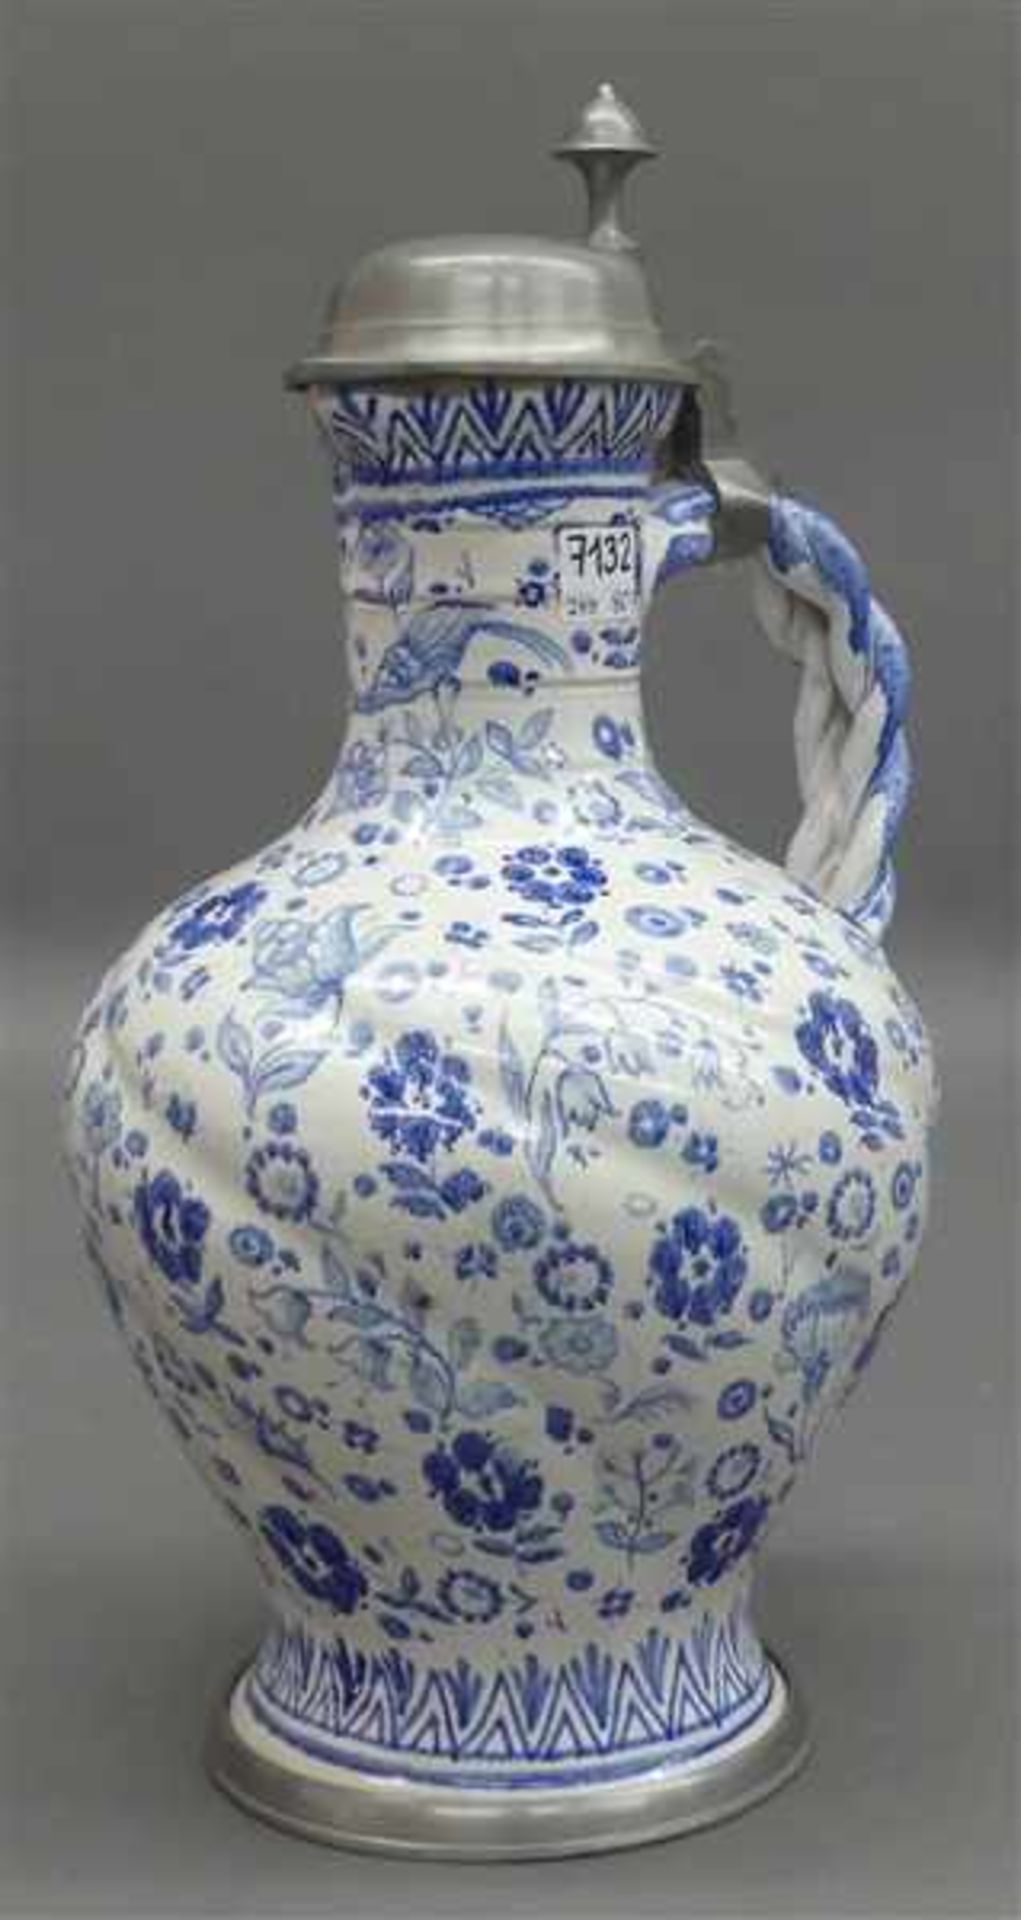 Keramikkrugmit Zopfhenkel, blaues Blumen- und Ornamentdekor, mit Zinnmontur, blaue Schwertmarke,